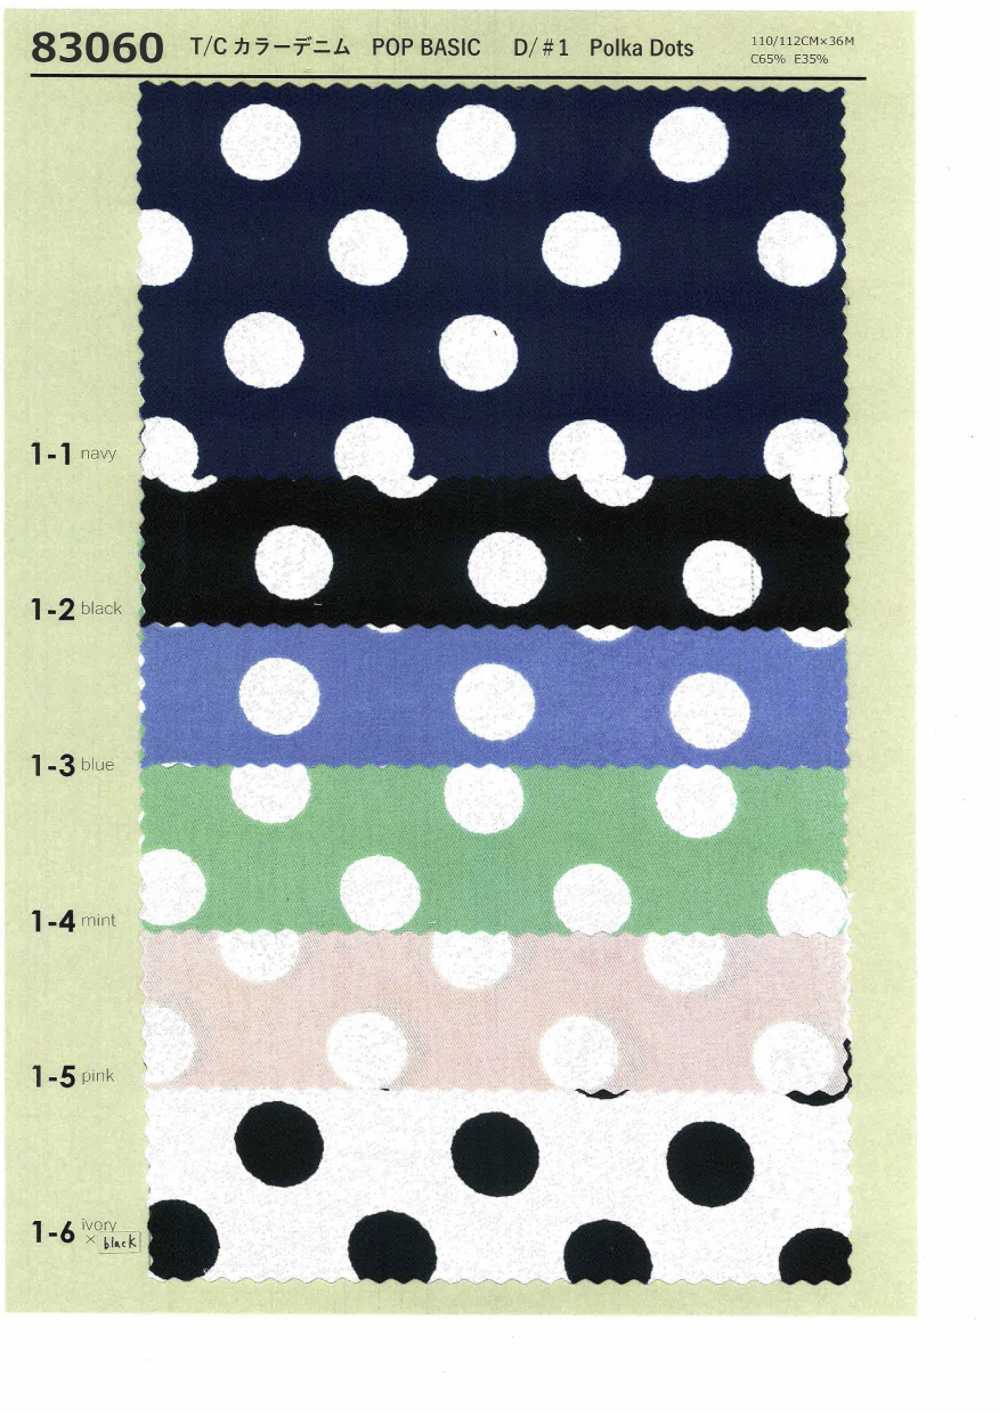 83060 T/C Color Denim Print Polka Dots, Flowers, Check[Textile / Fabric] VANCET